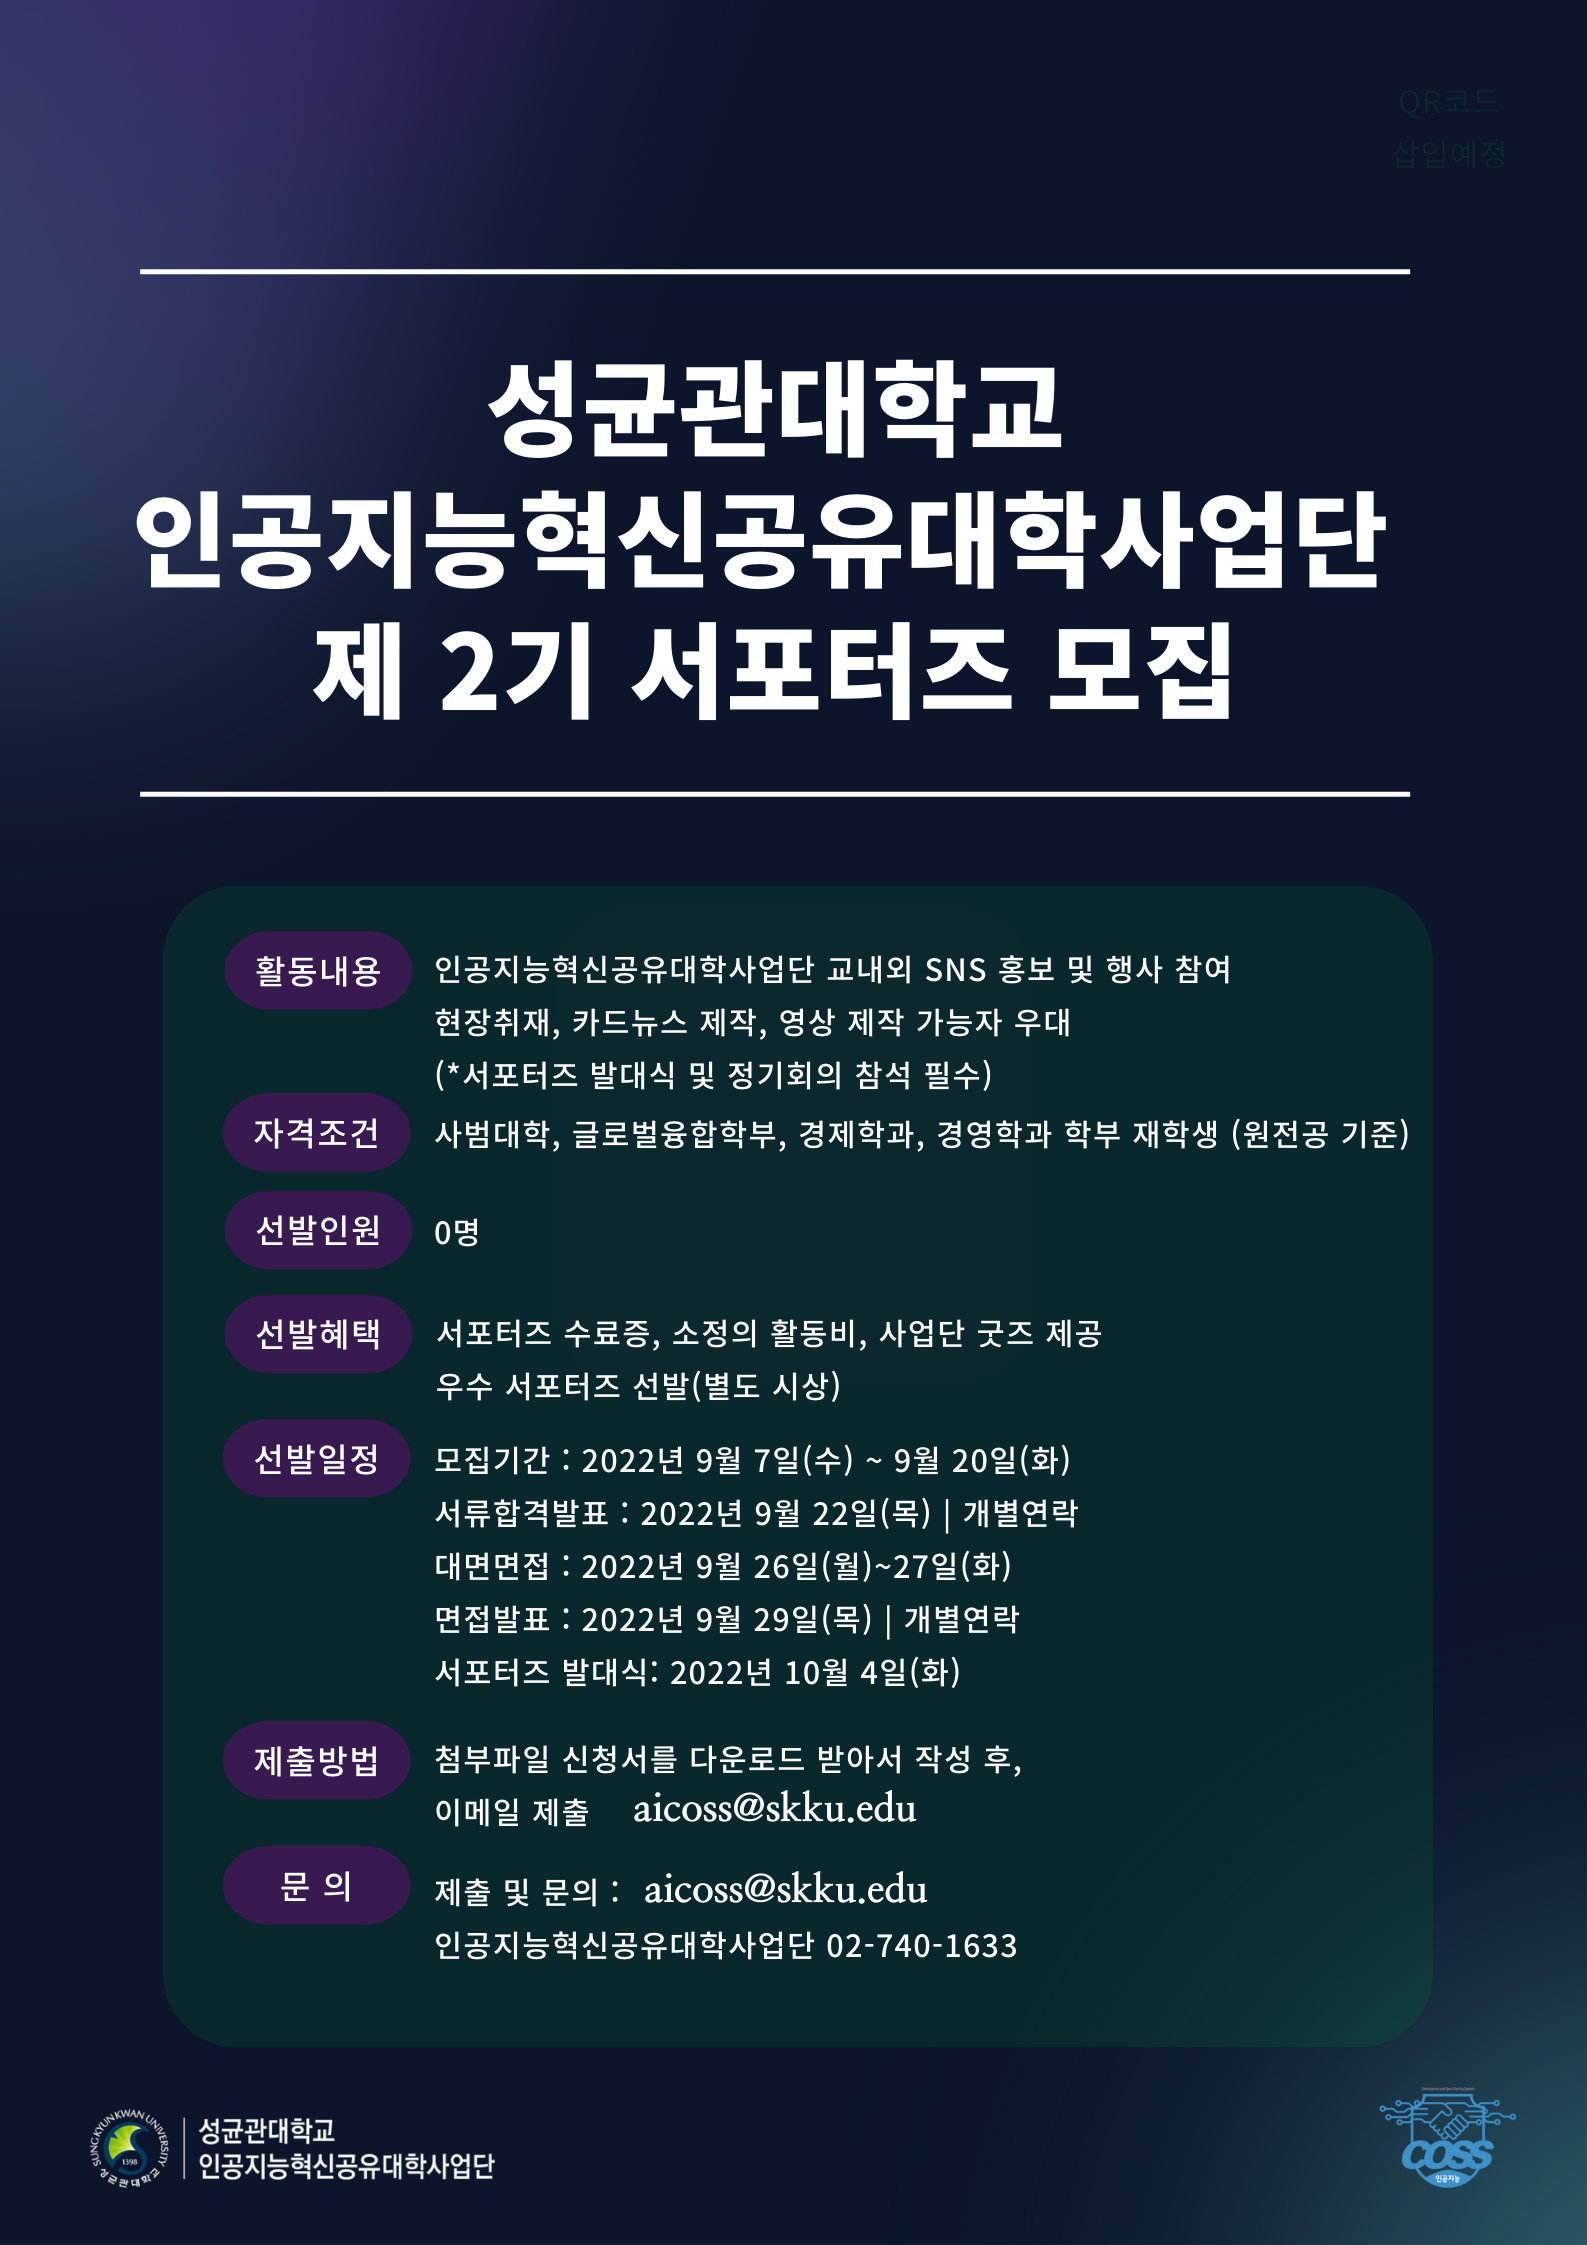 인공지능혁신공유대학사업단 서포터즈 모집